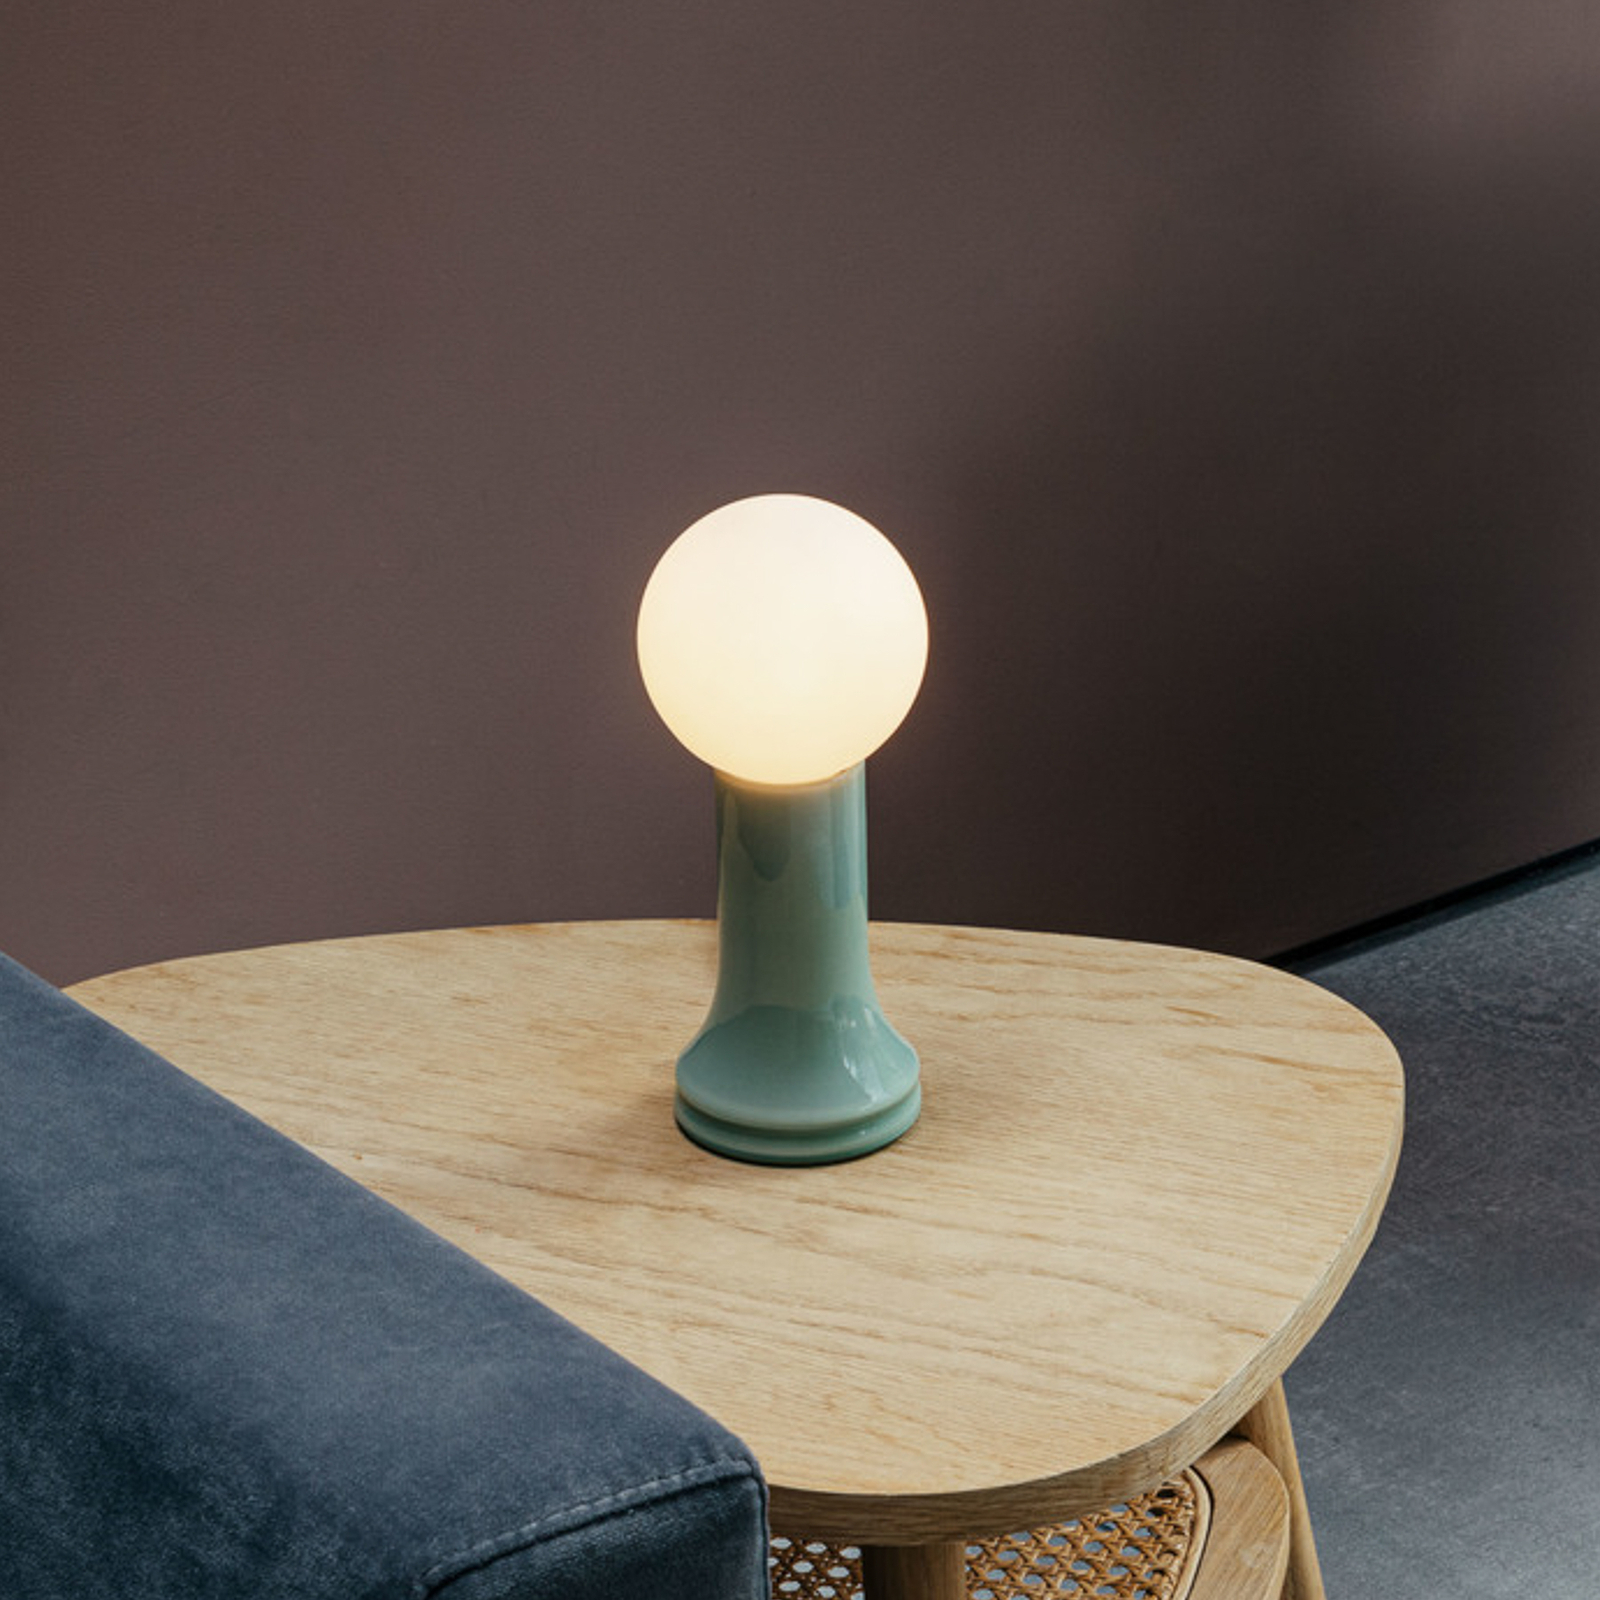 Tala lampa stołowa Shore, szkło, E27 żarówka LED Globe, zielony